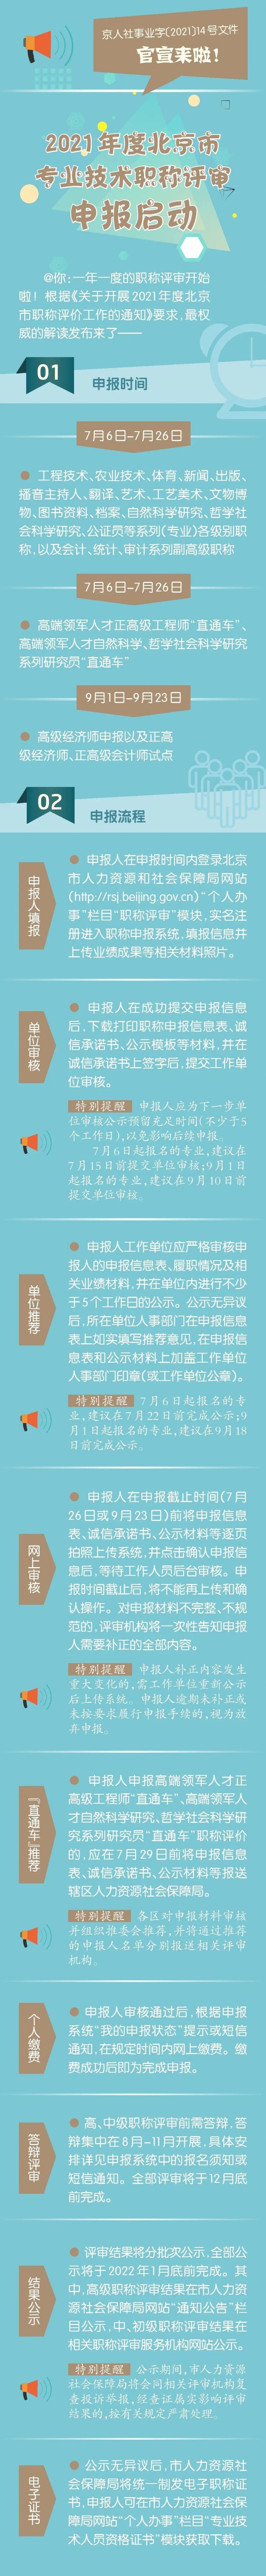 2021年度北京职称申报新变化(图解)